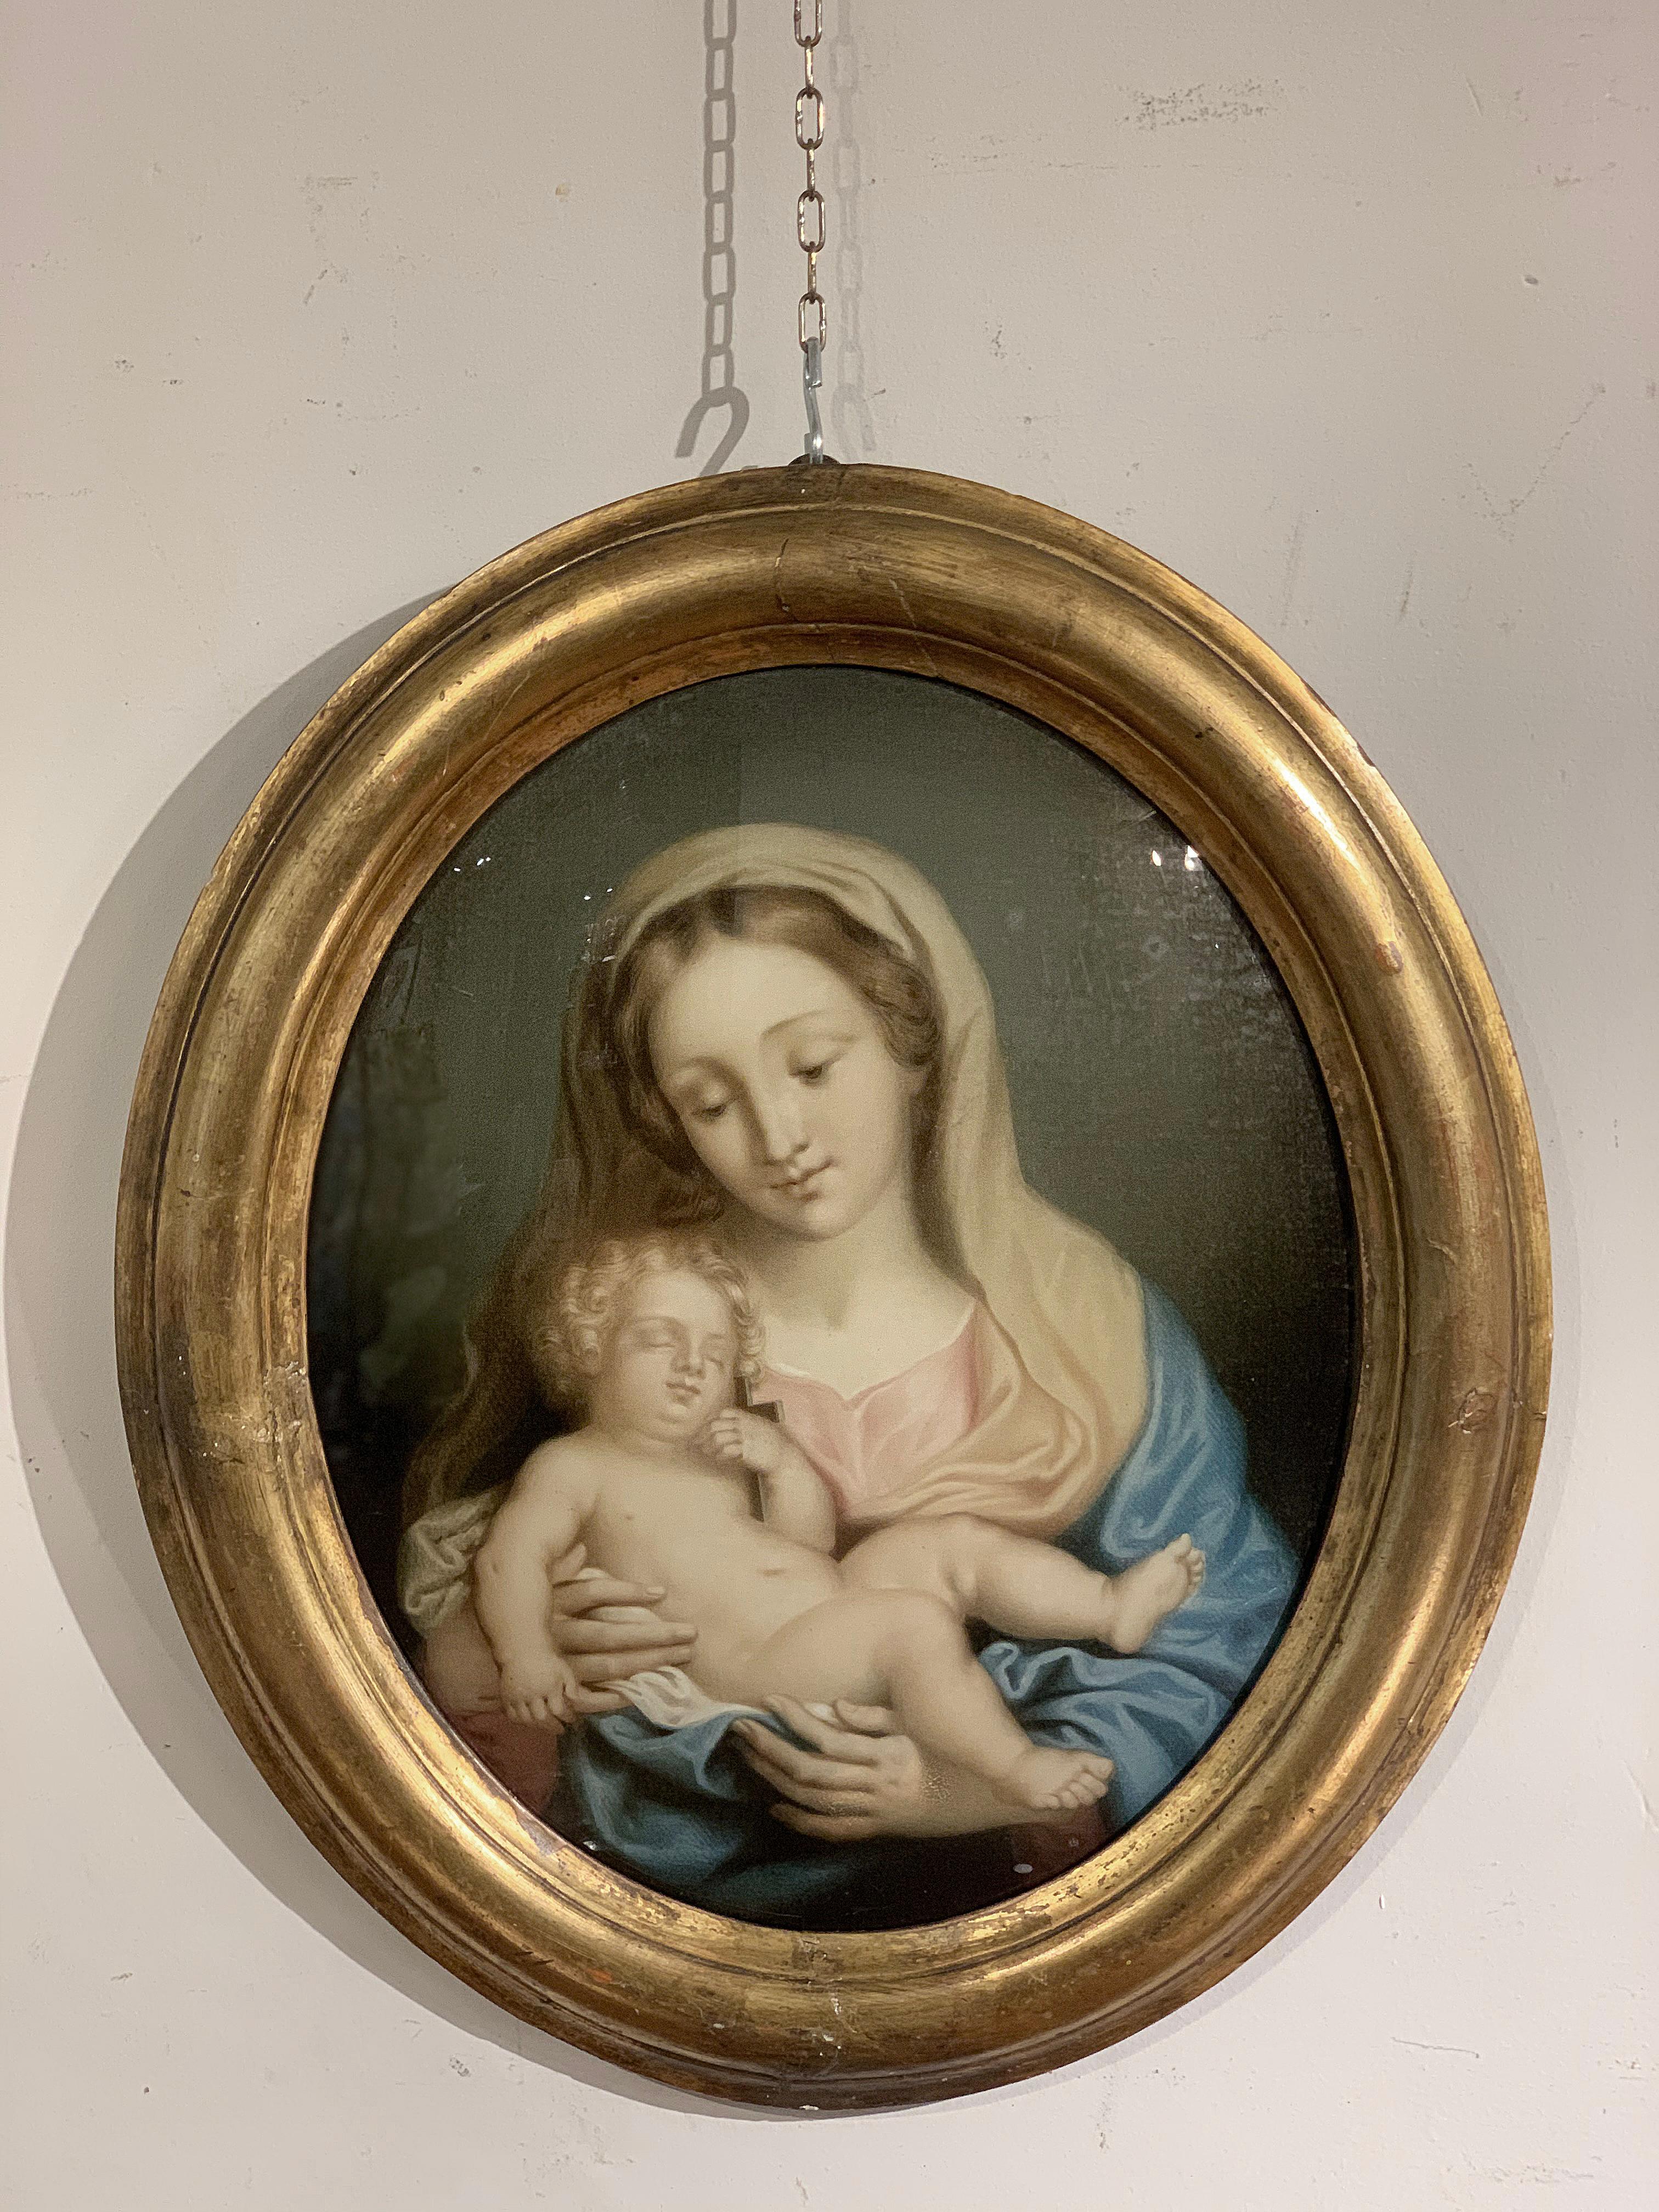 Fascinant tableau représentant la Madone avec l'Enfant Jésus, peint au dos sur un délicat panneau de verre. Cette œuvre peut être attribuée à l'école toscane du début du XIXe siècle et se distingue par l'extraordinaire précision des détails et le